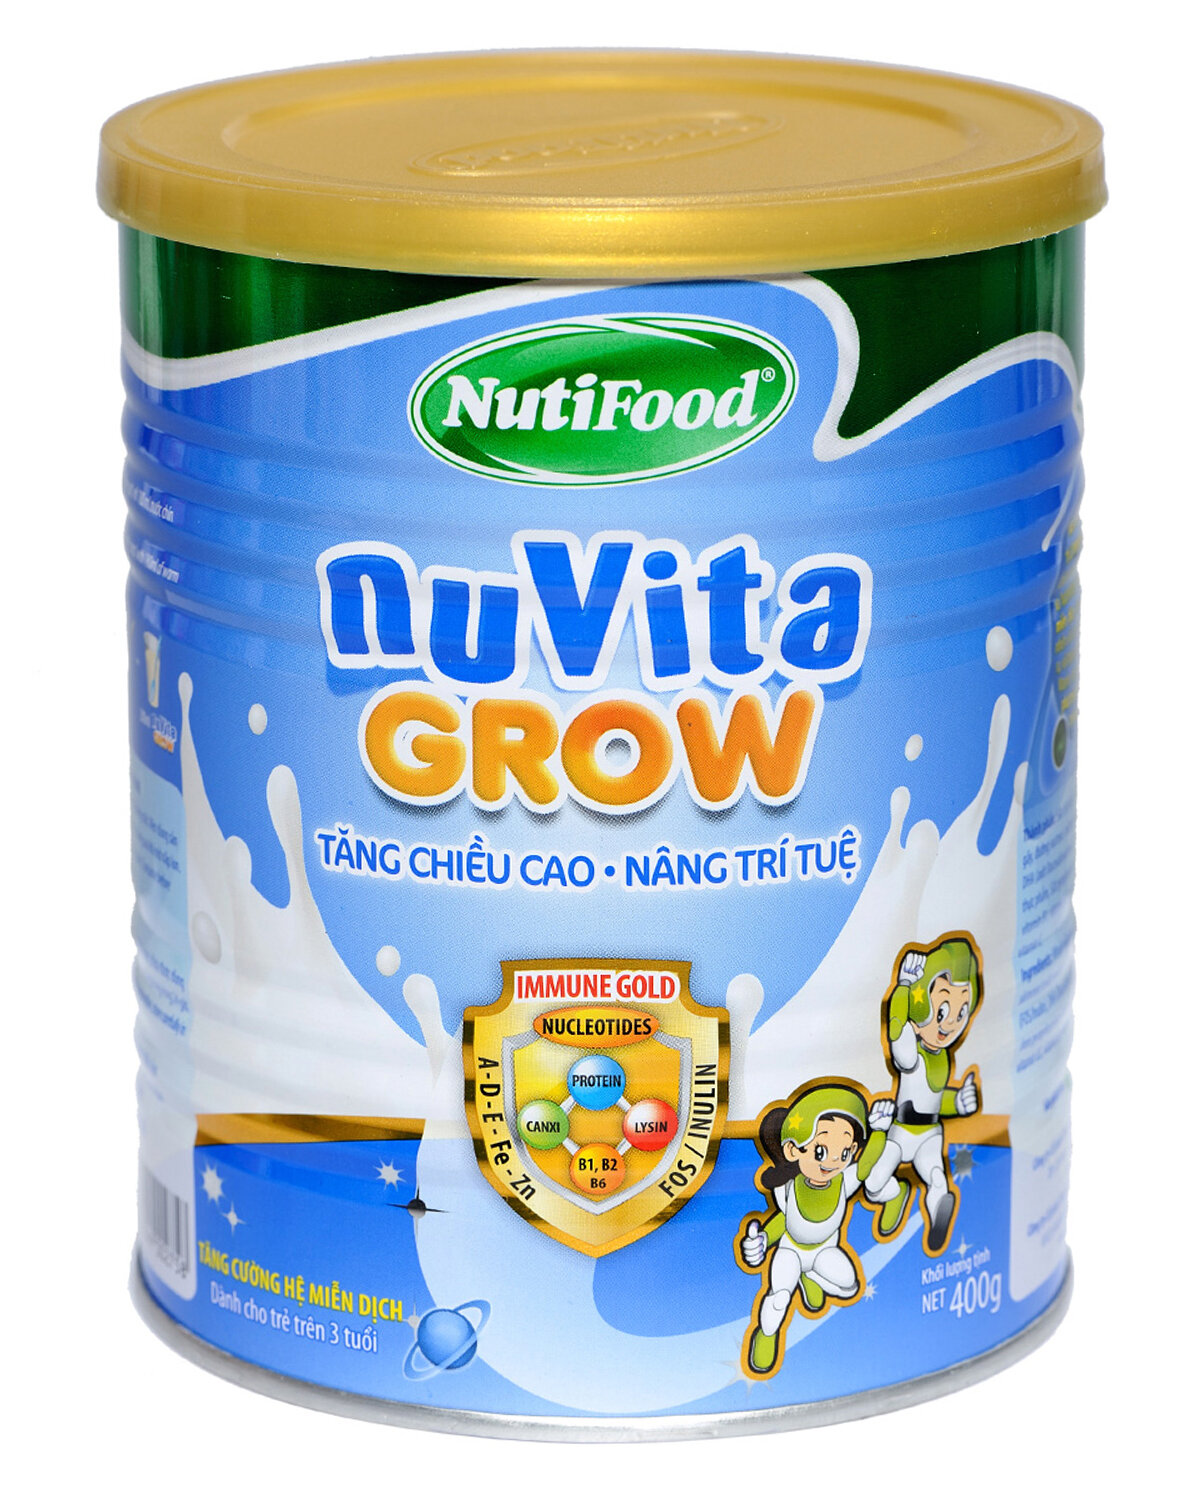 Nuvita Grow sở hữu công thức Immune Gold